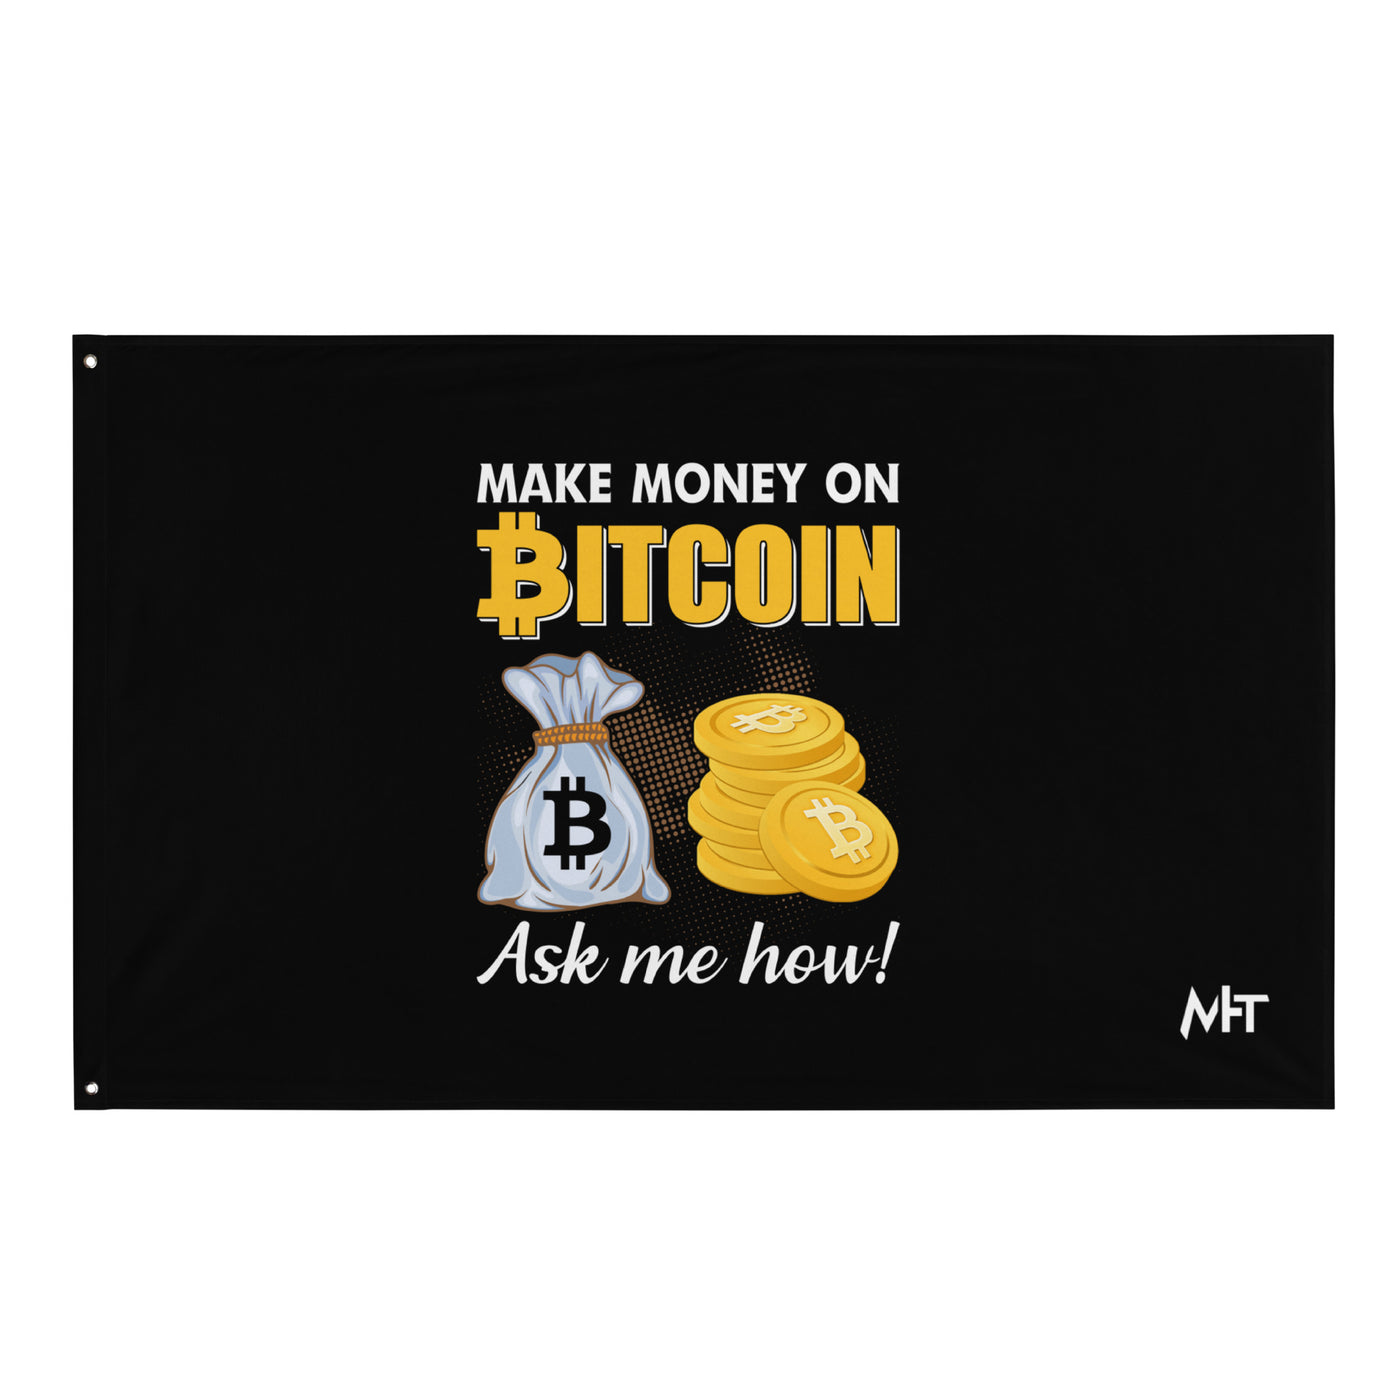 Make money on Bitcoin, Ask me how - Flag